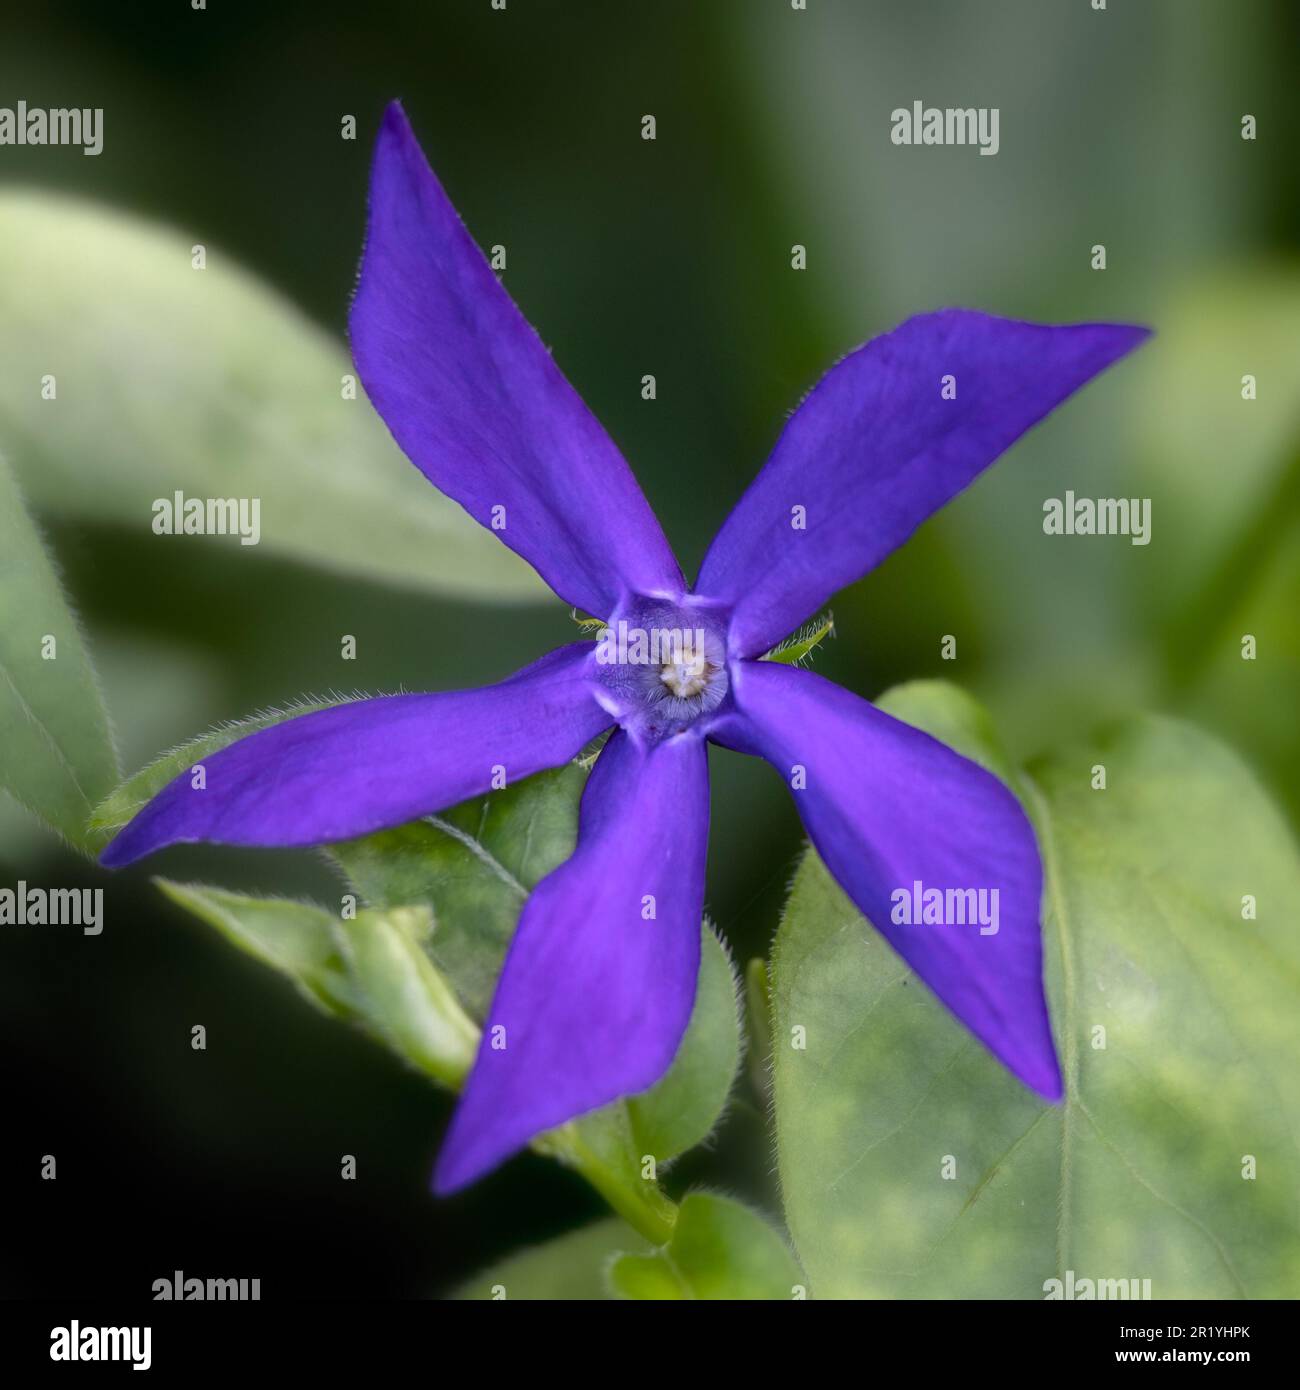 Closeup of a single flower of Vinca major var. oxyloba in a garden in Spring Stock Photo